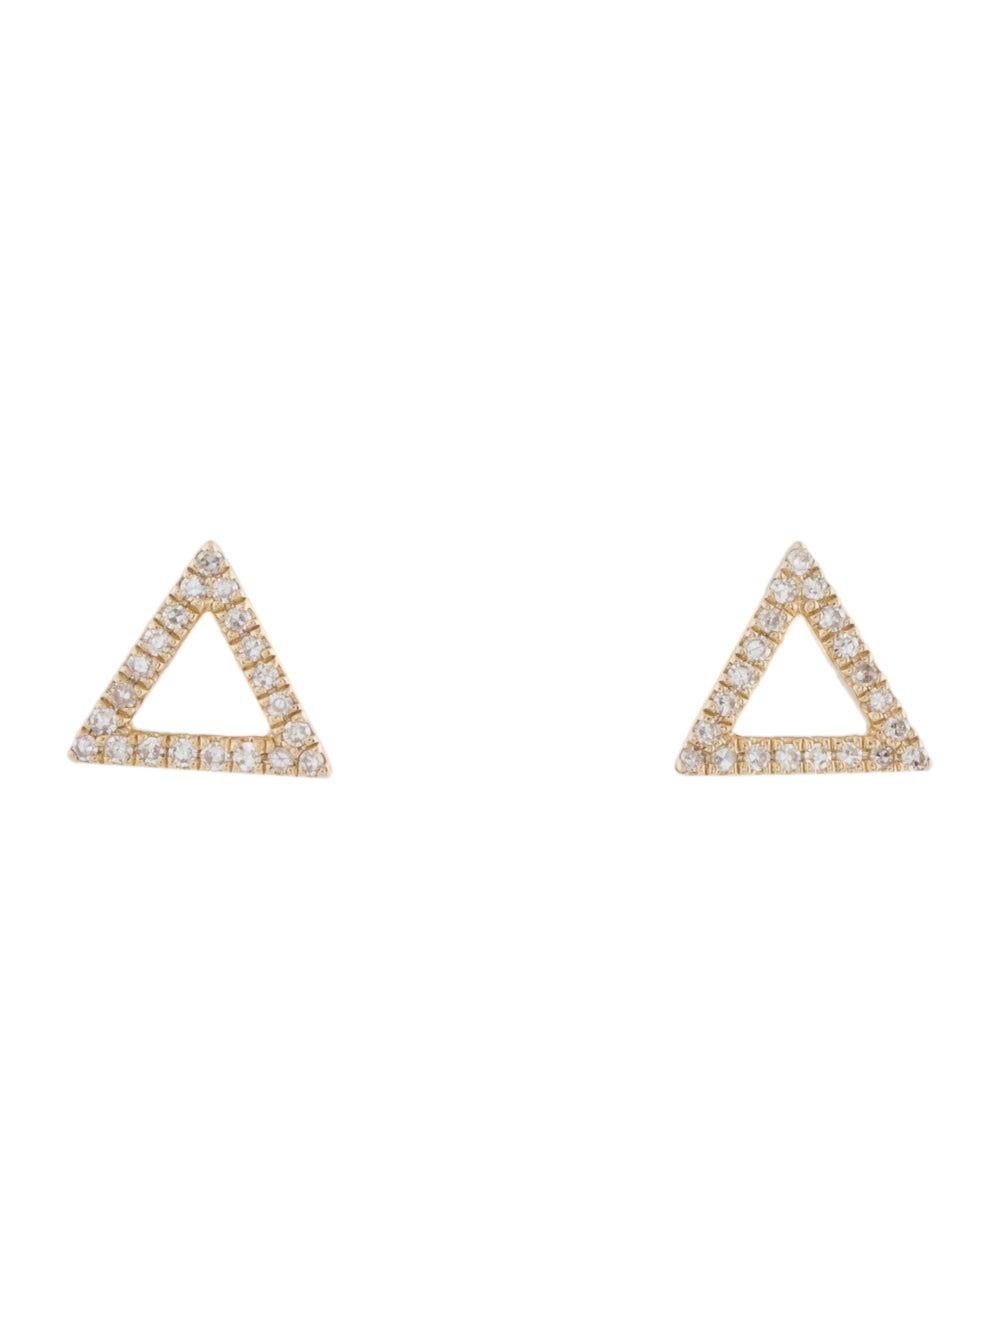 Boucles d'oreilles en forme de triangle ouvert : Fabriquées en or véritable 14k, ces boucles d'oreilles populaires en forme de triangle ouvert sont ornées de 42 diamants naturels blancs étincelants d'environ 0,12 ct. Diamants certifiés. Couleur et